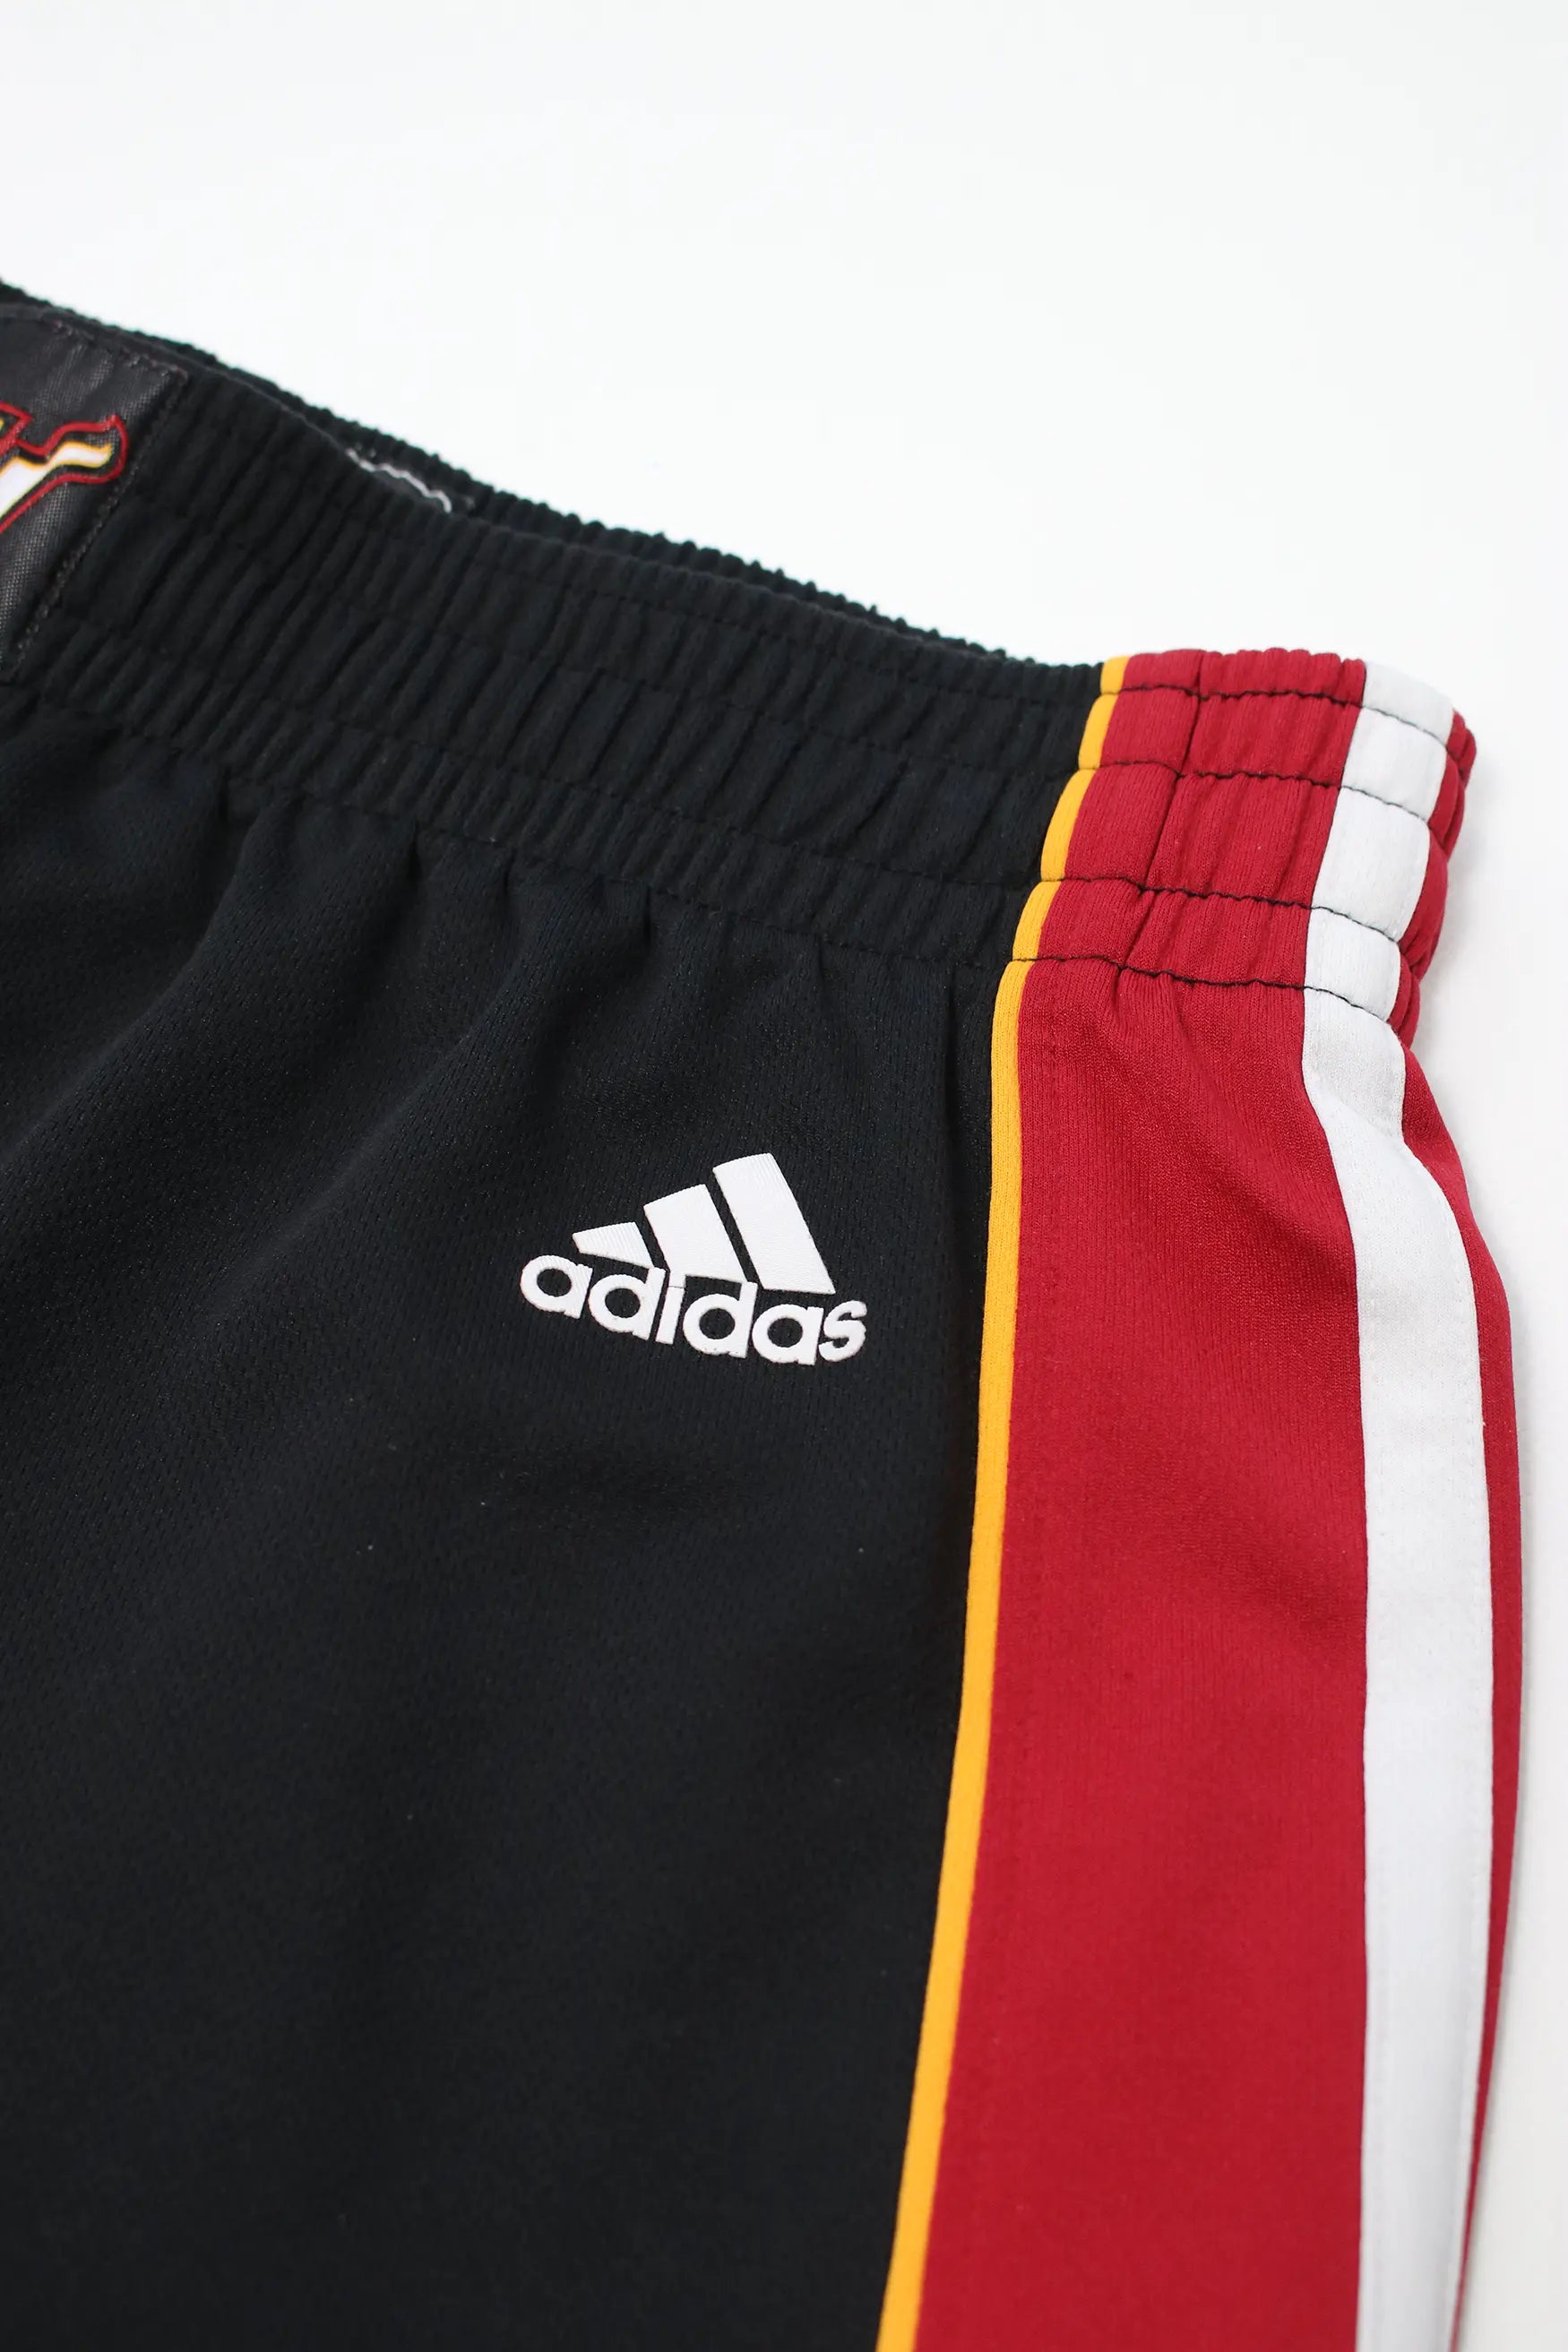 Adidas Miami Heat Shorts